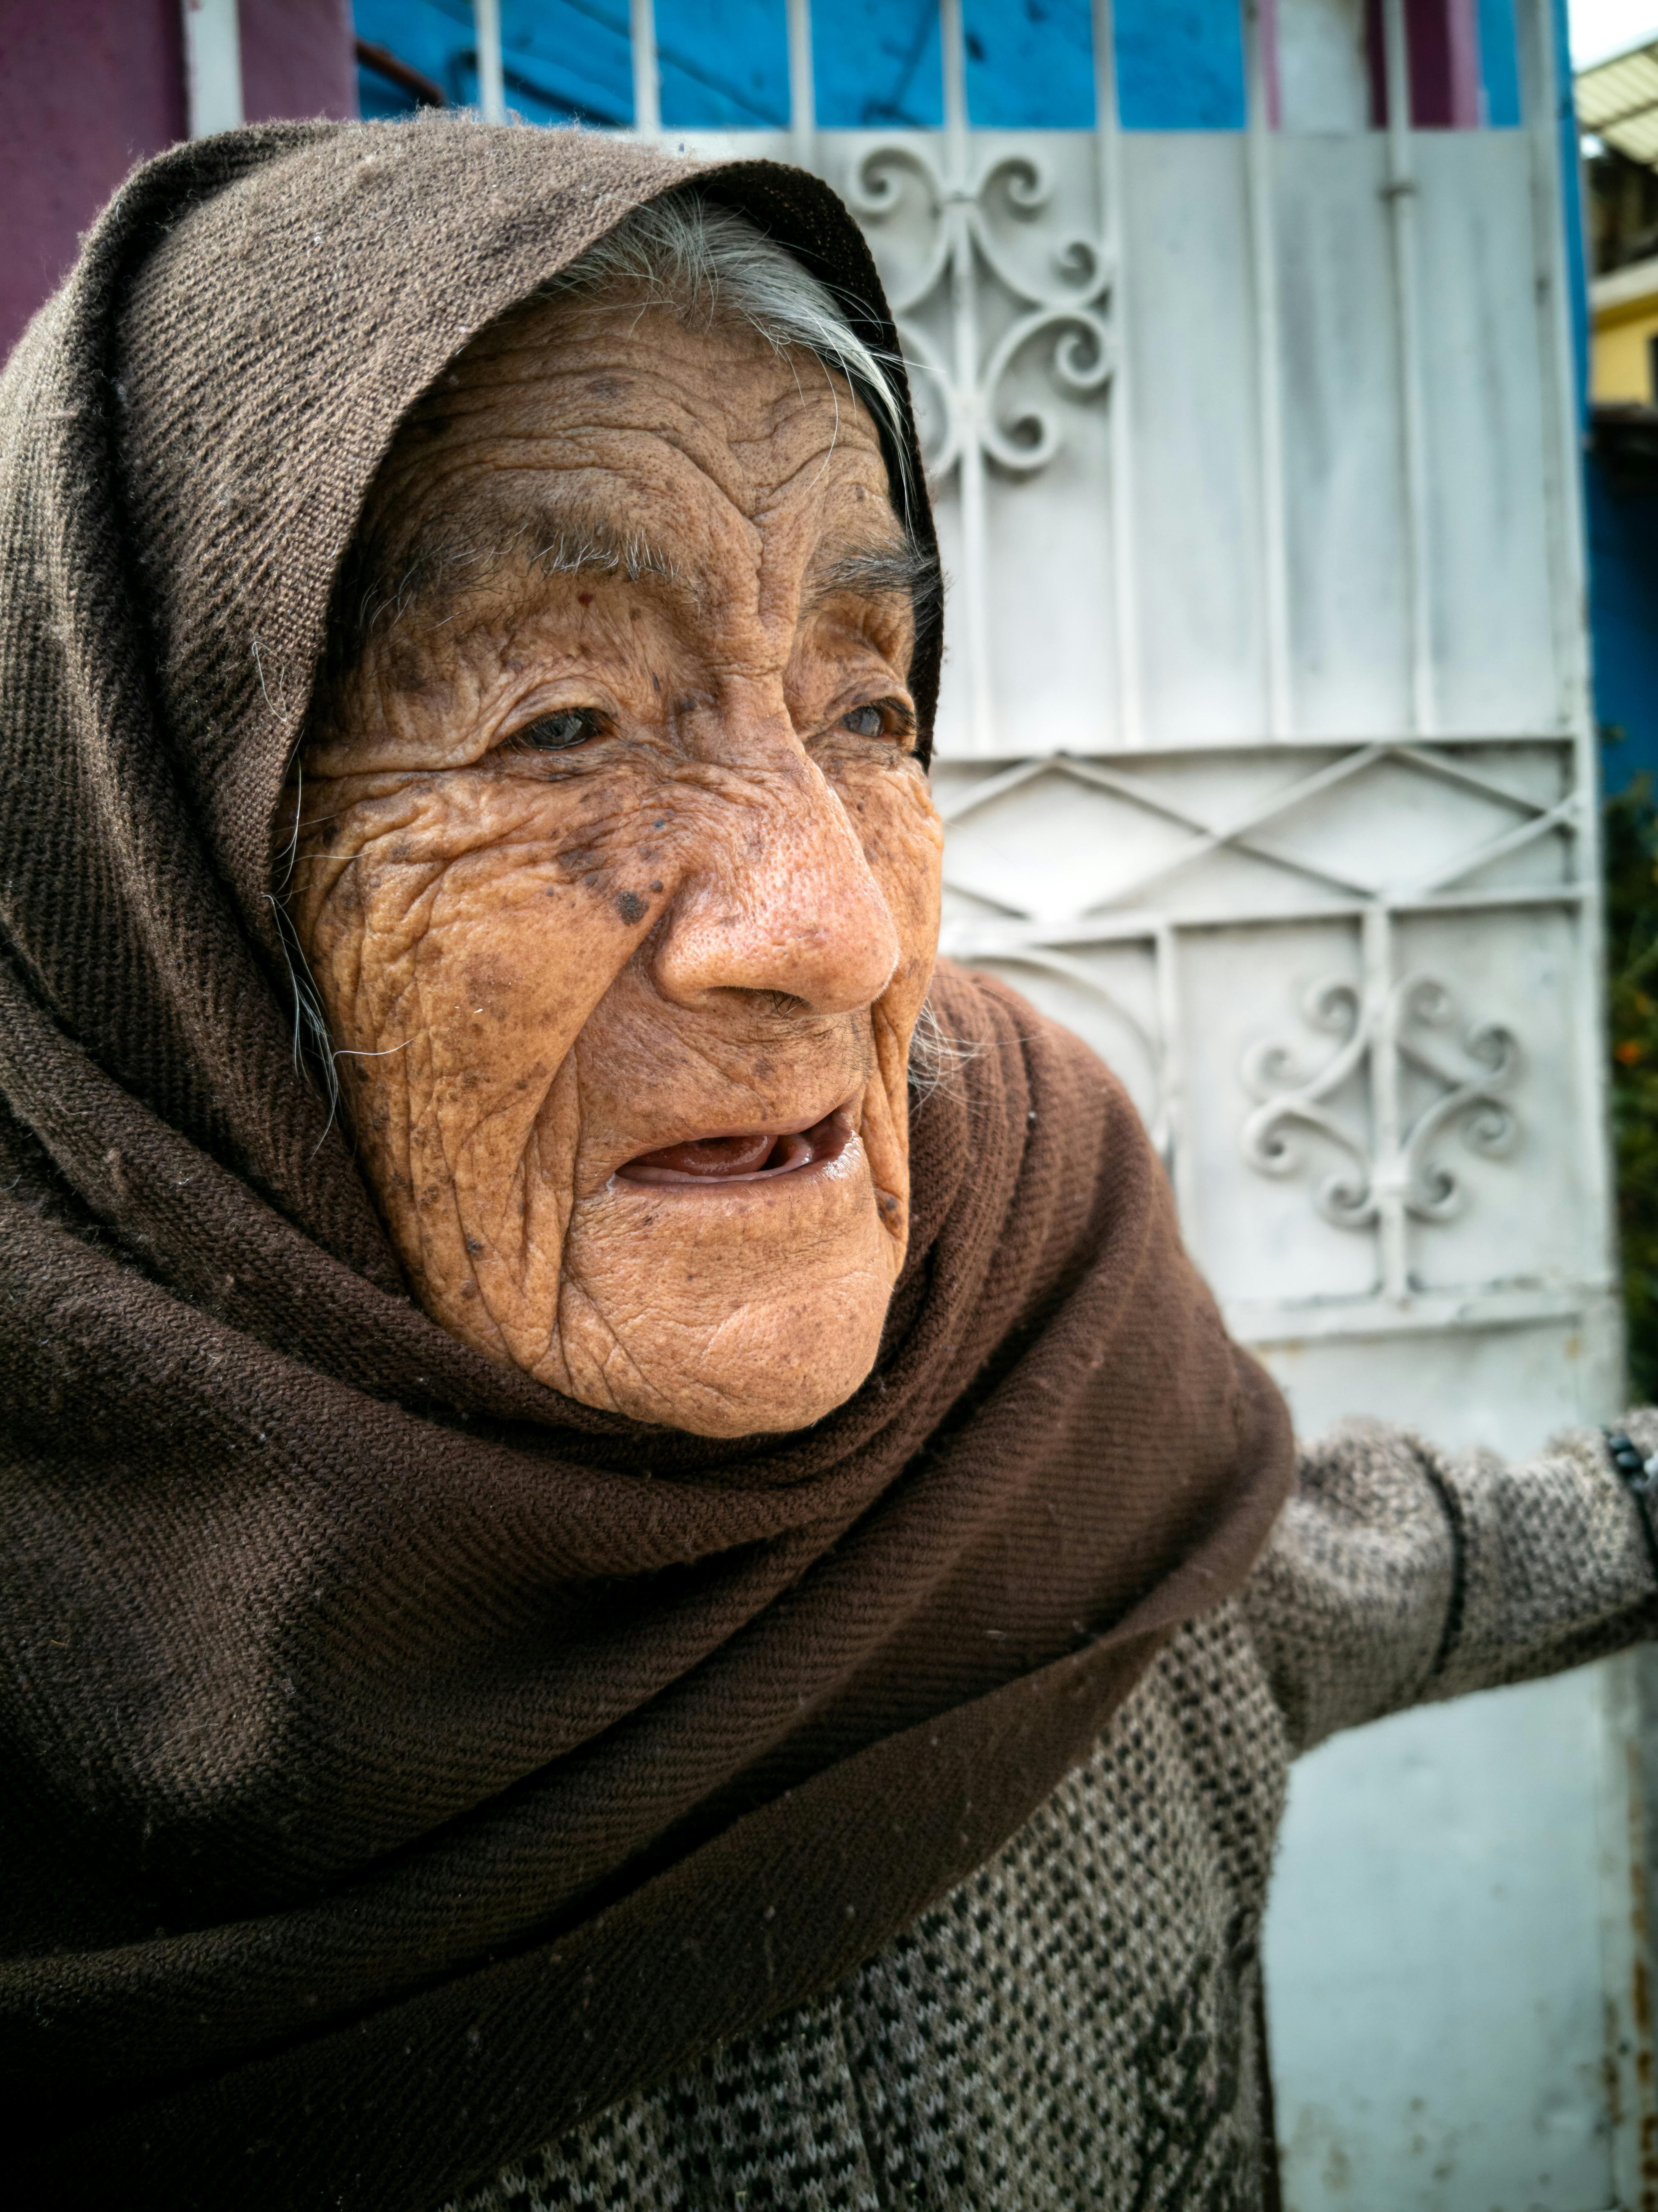 Portrait Cute Old Woman Posing On Stock Photo 88813843 | Shutterstock